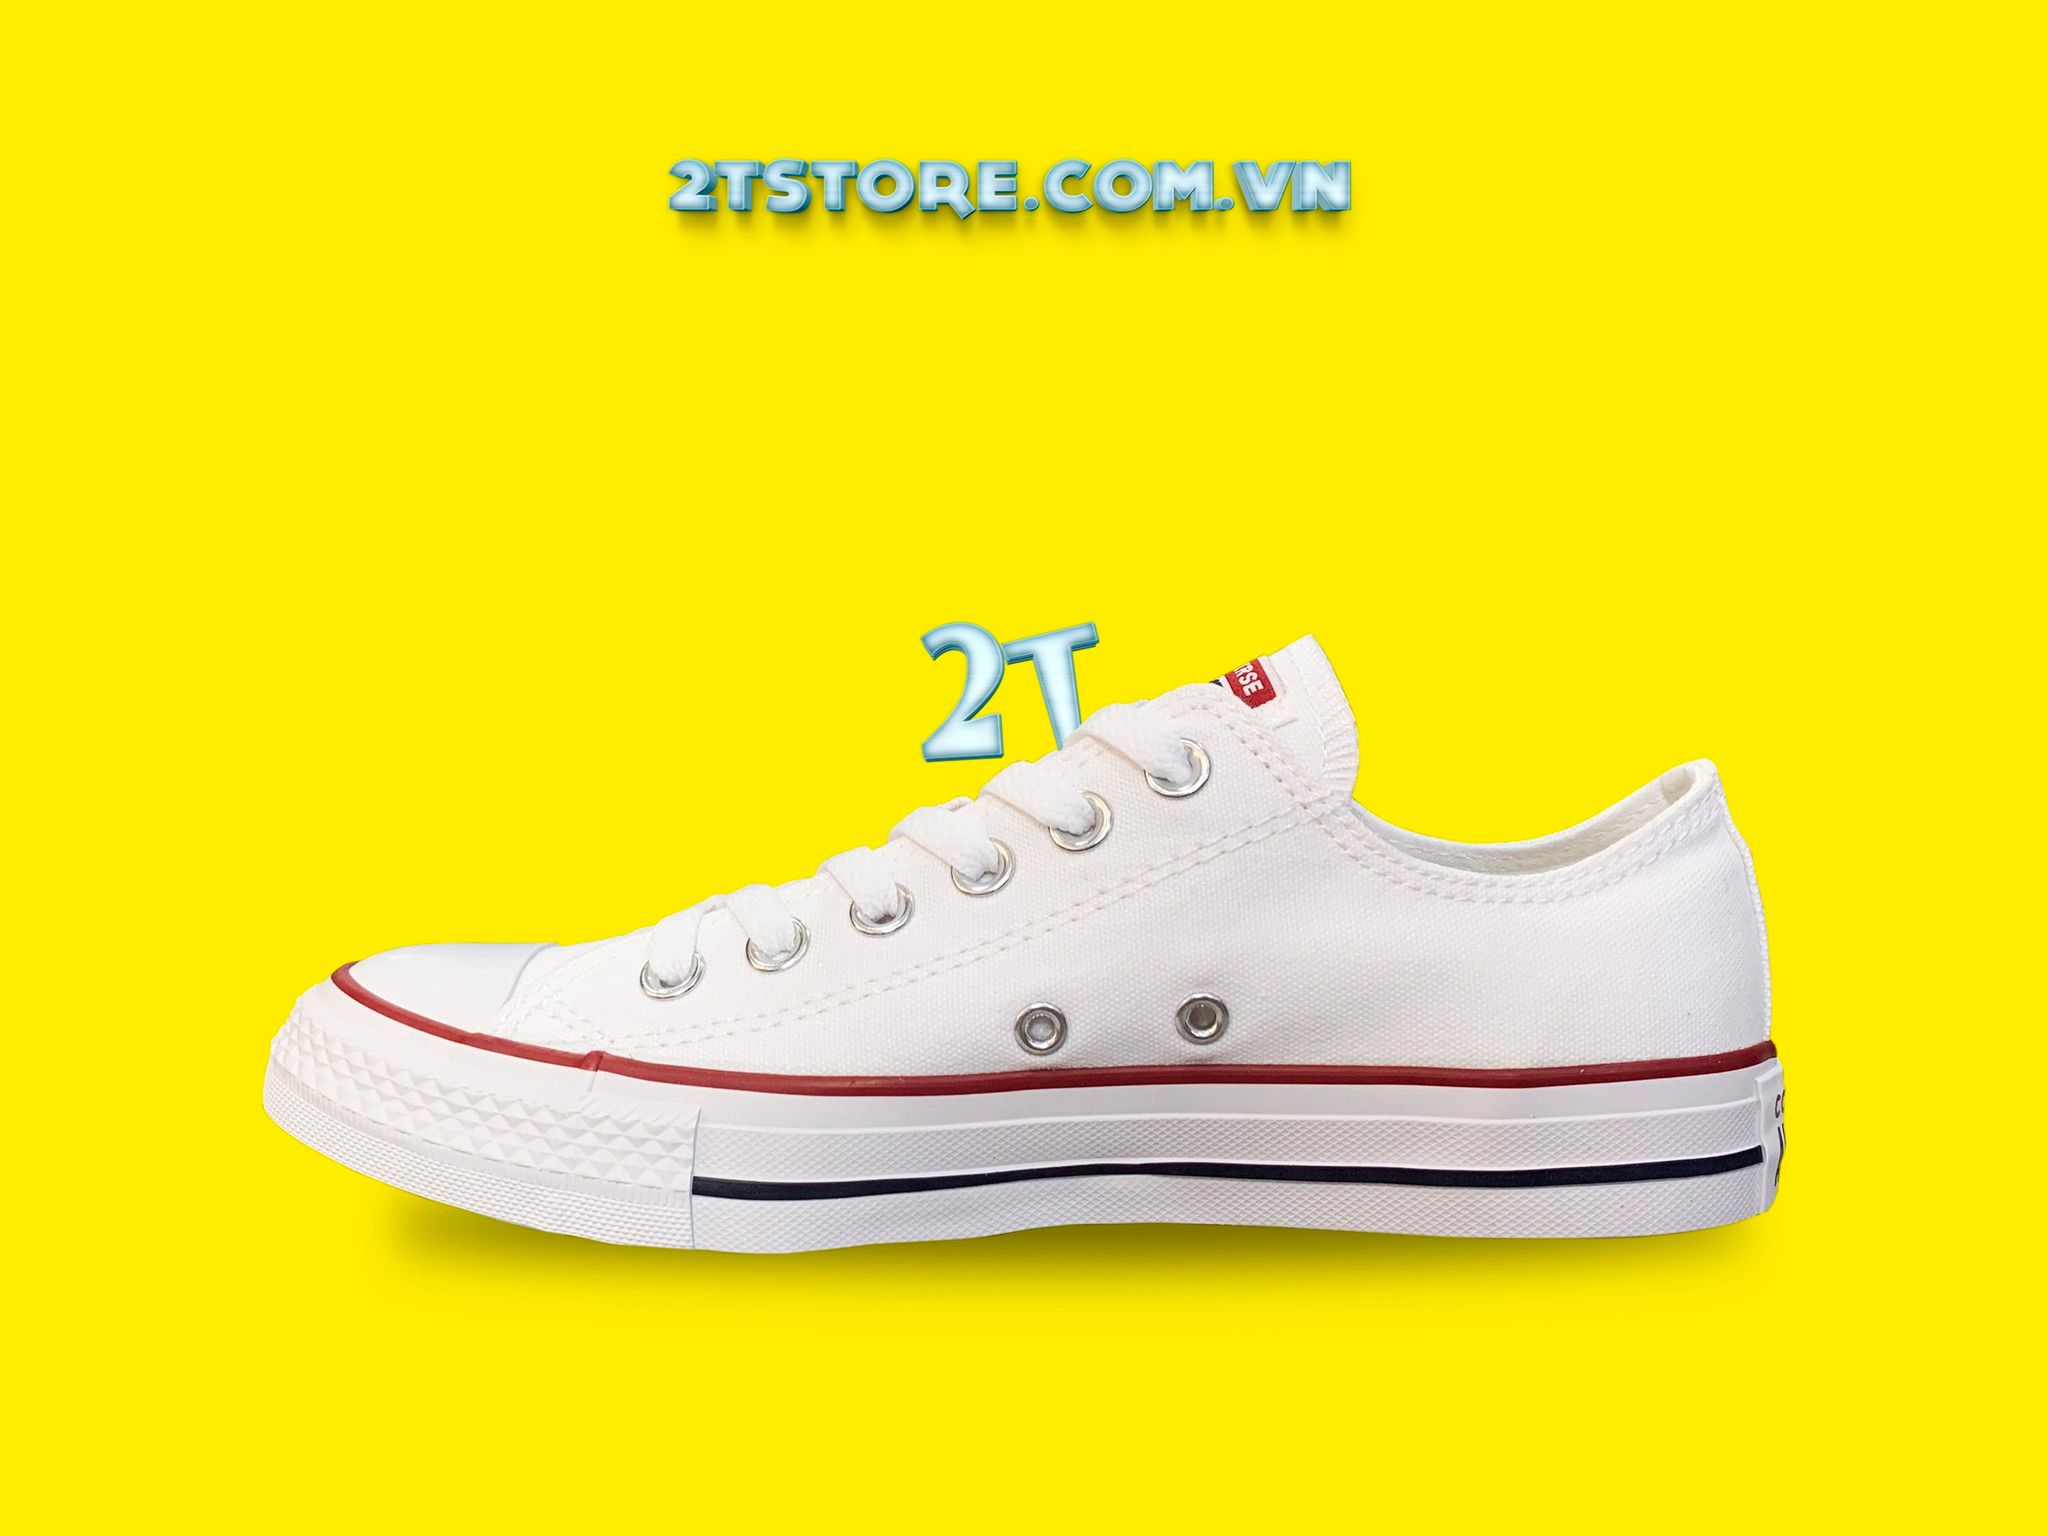 Giày Converse Classic Trắng Cổ Thấp Chính Hãng – 2TStore